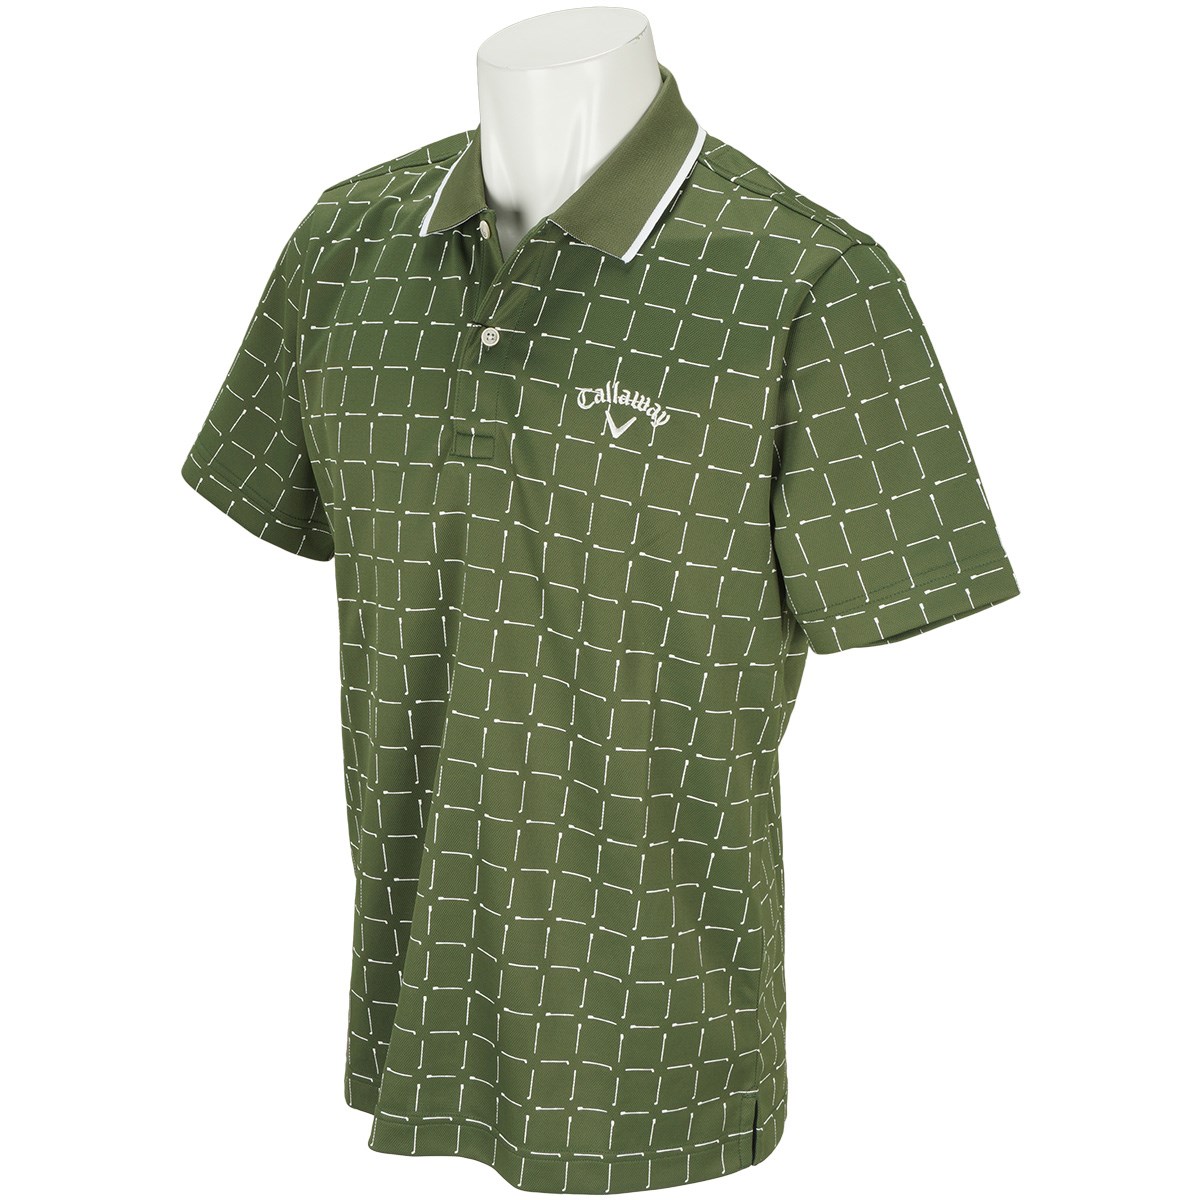 キャロウェイゴルフ(Callaway Golf) オールプリント鹿の子半袖ポロシャツ 